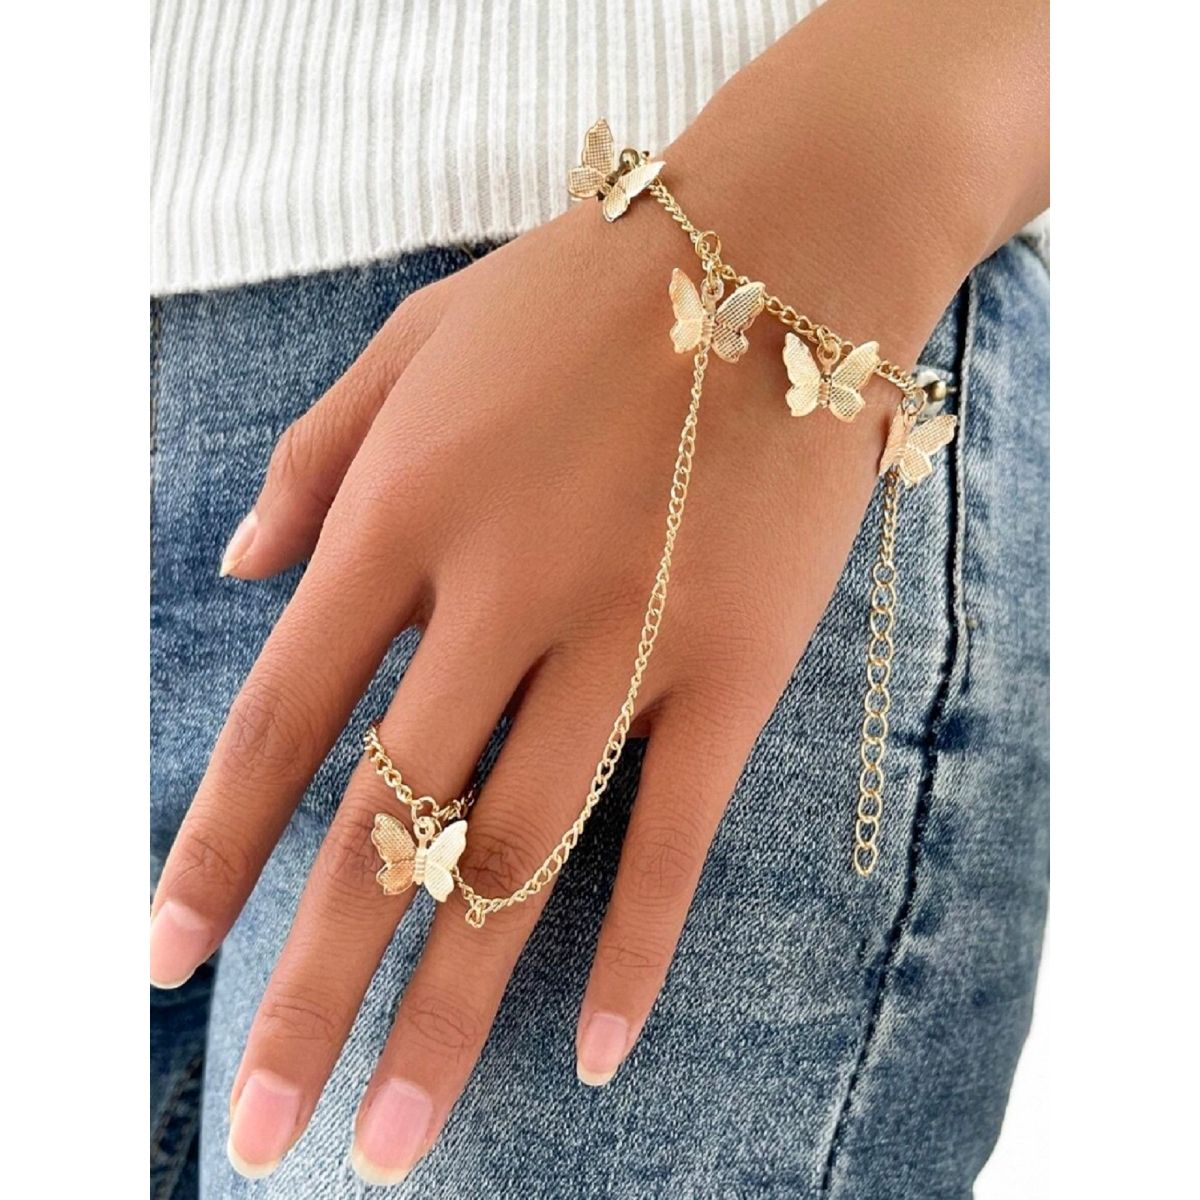 Ad Finger Ring hand chain bracelet for Girls  UpdateLife